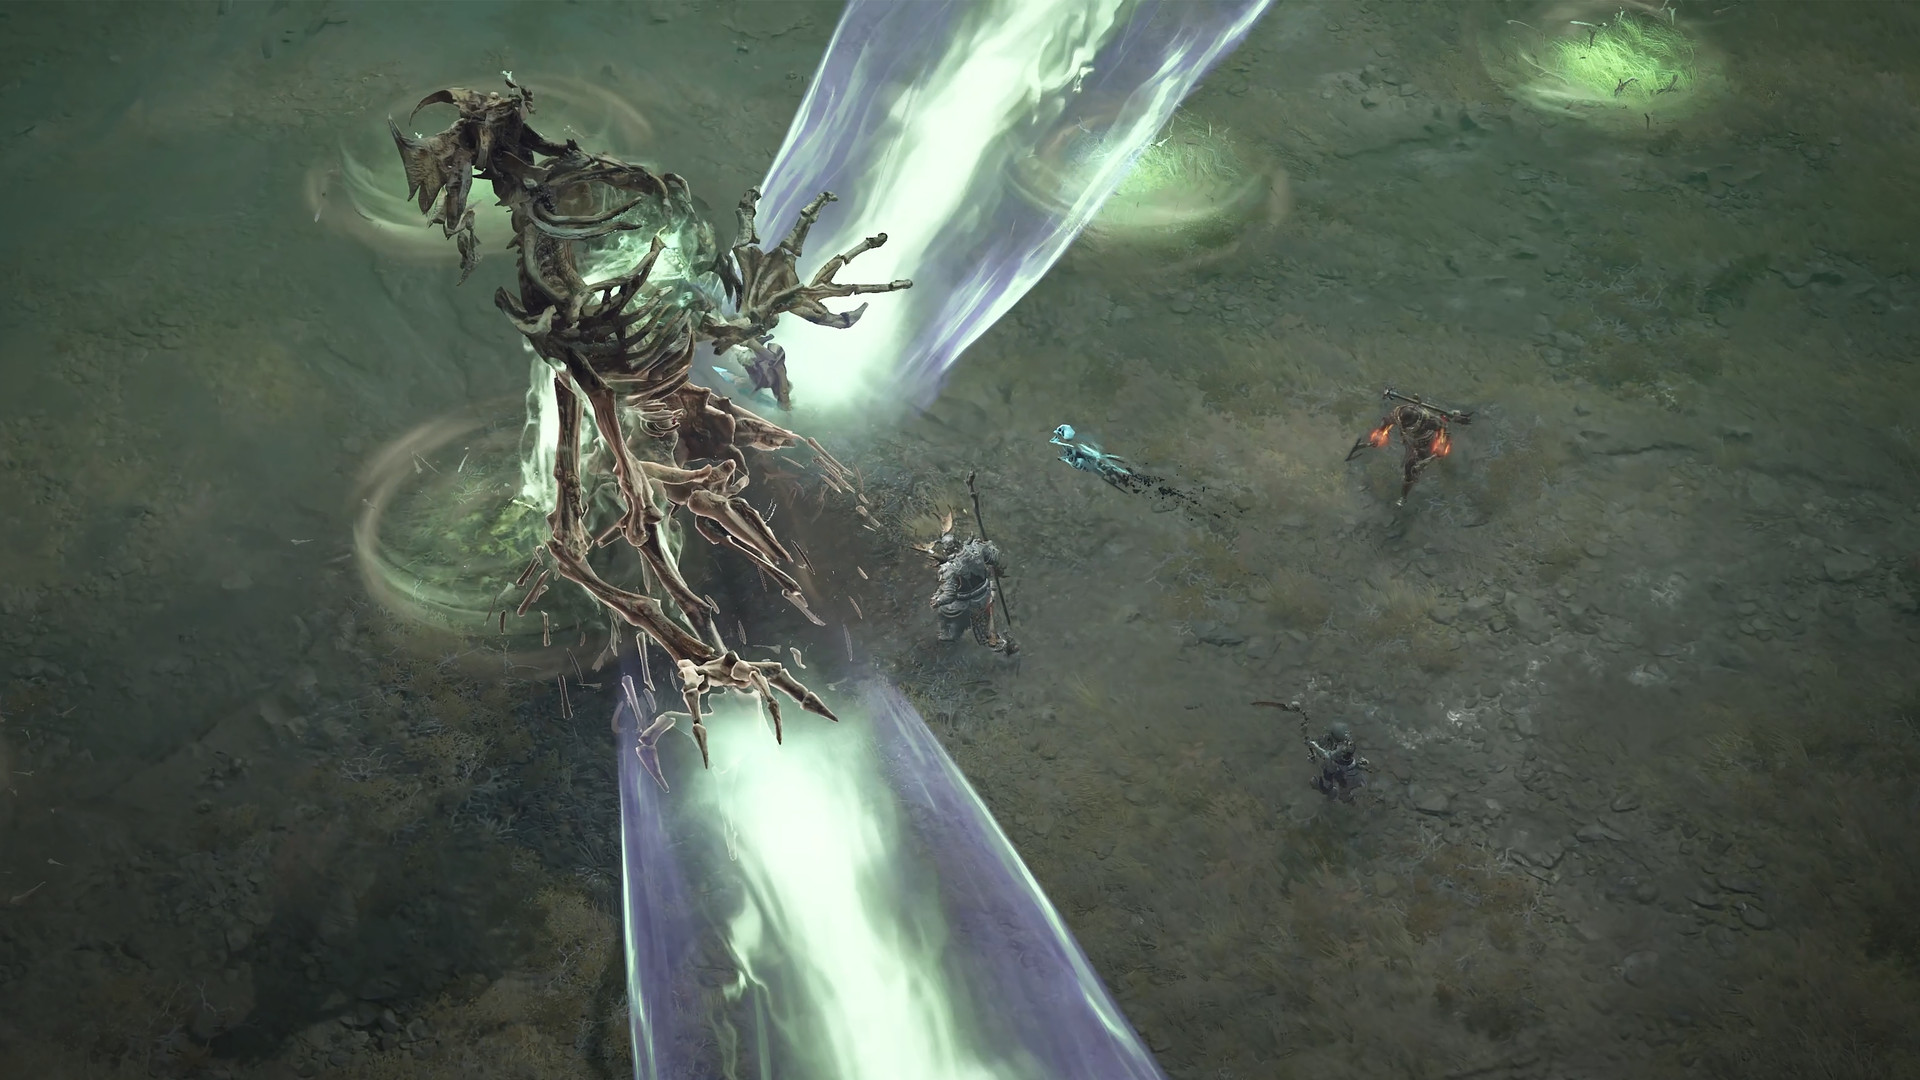 A Druid battles a giant evil skeleton world boss in Diablo 4